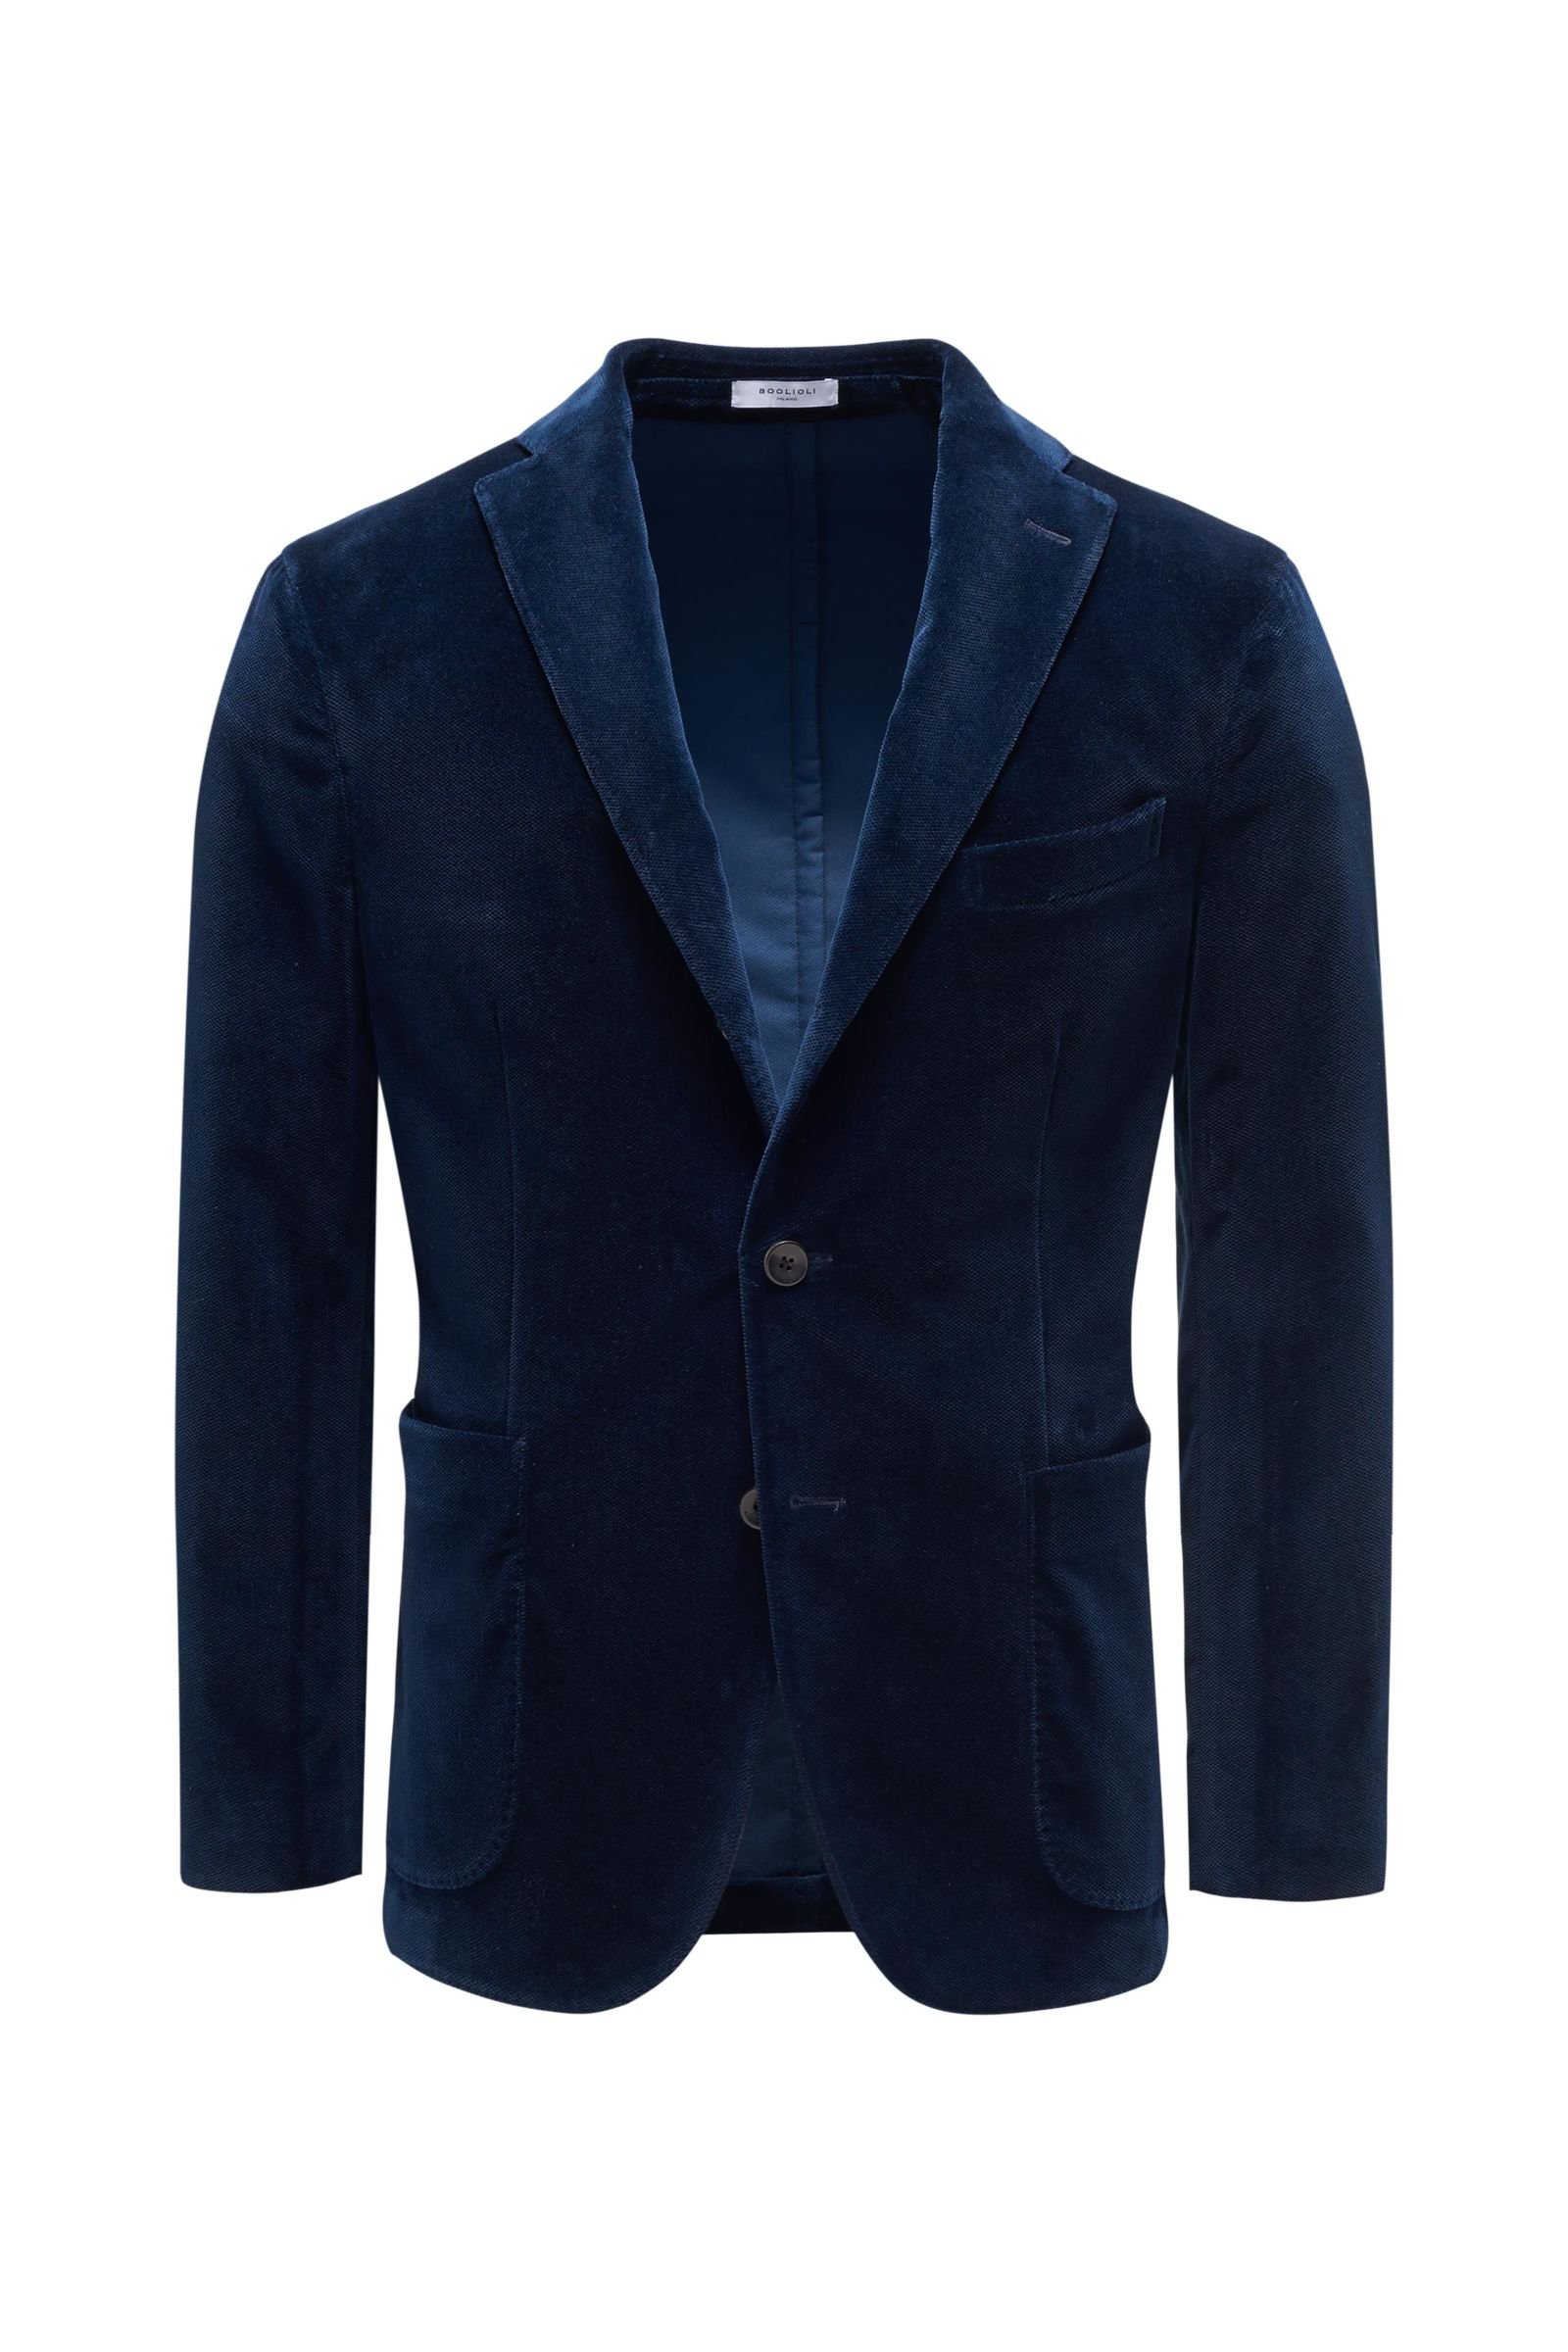 BOGLIOLI velvet jacket dark blue | BRAUN Hamburg